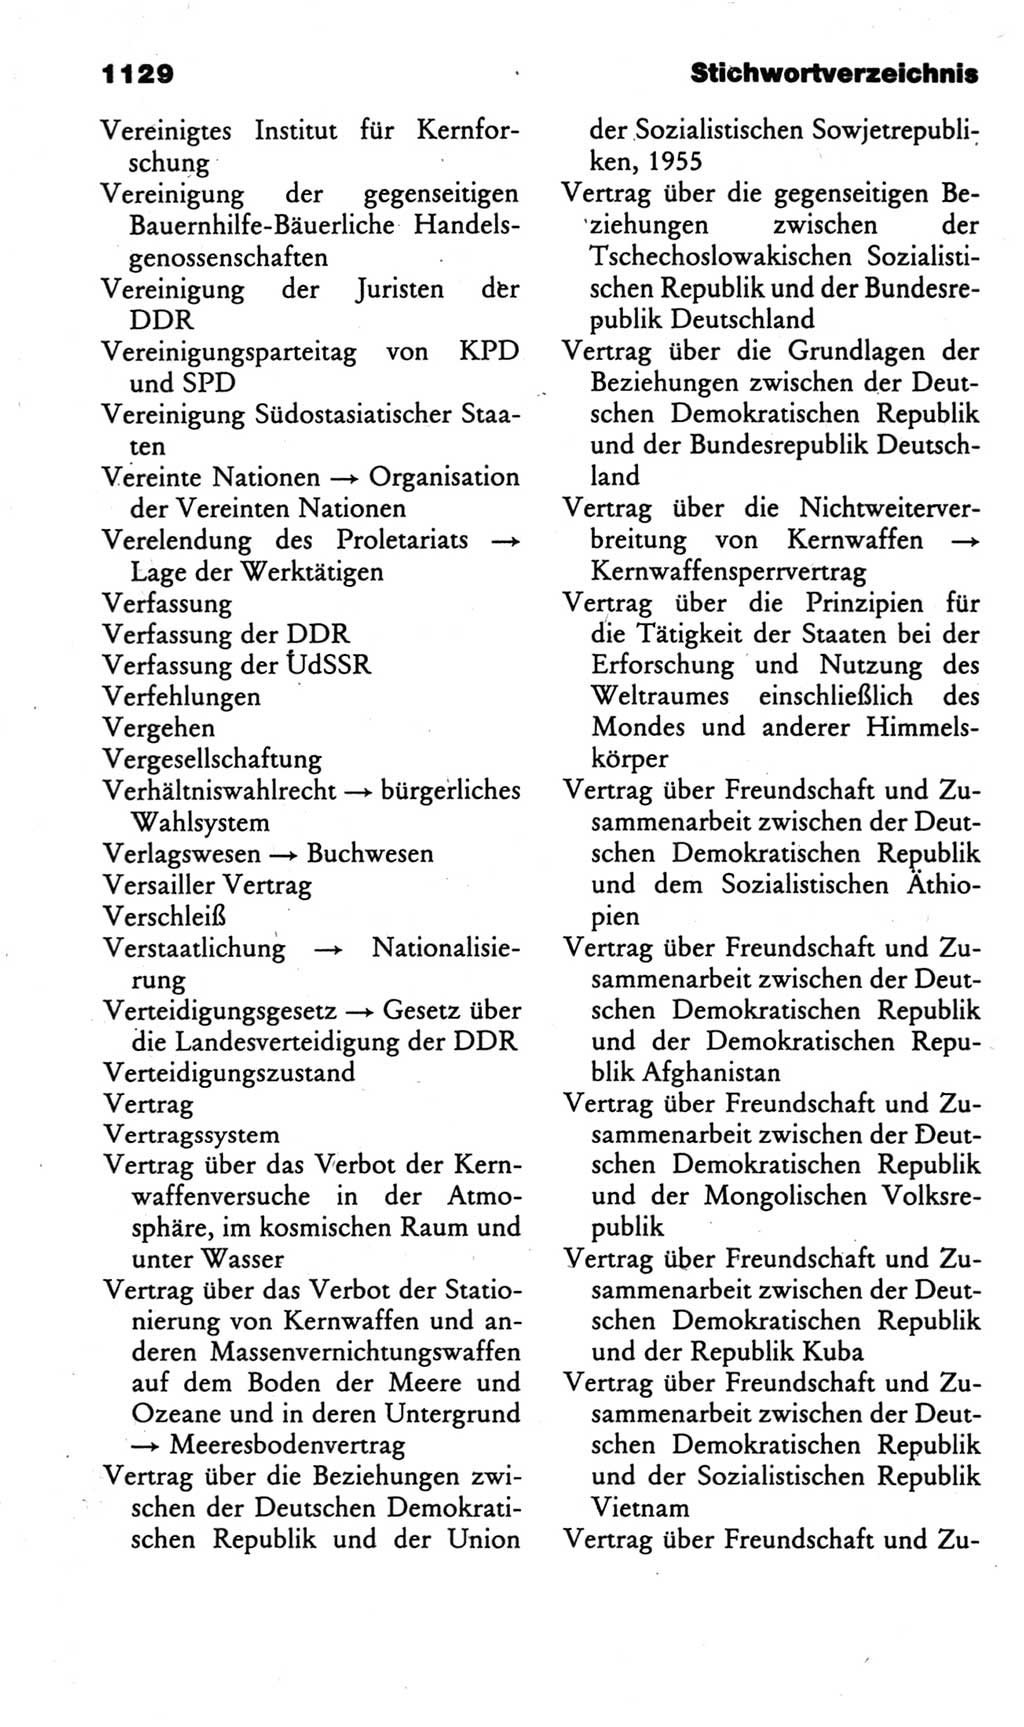 Kleines politisches Wörterbuch [Deutsche Demokratische Republik (DDR)] 1985, Seite 1129 (Kl. pol. Wb. DDR 1985, S. 1129)